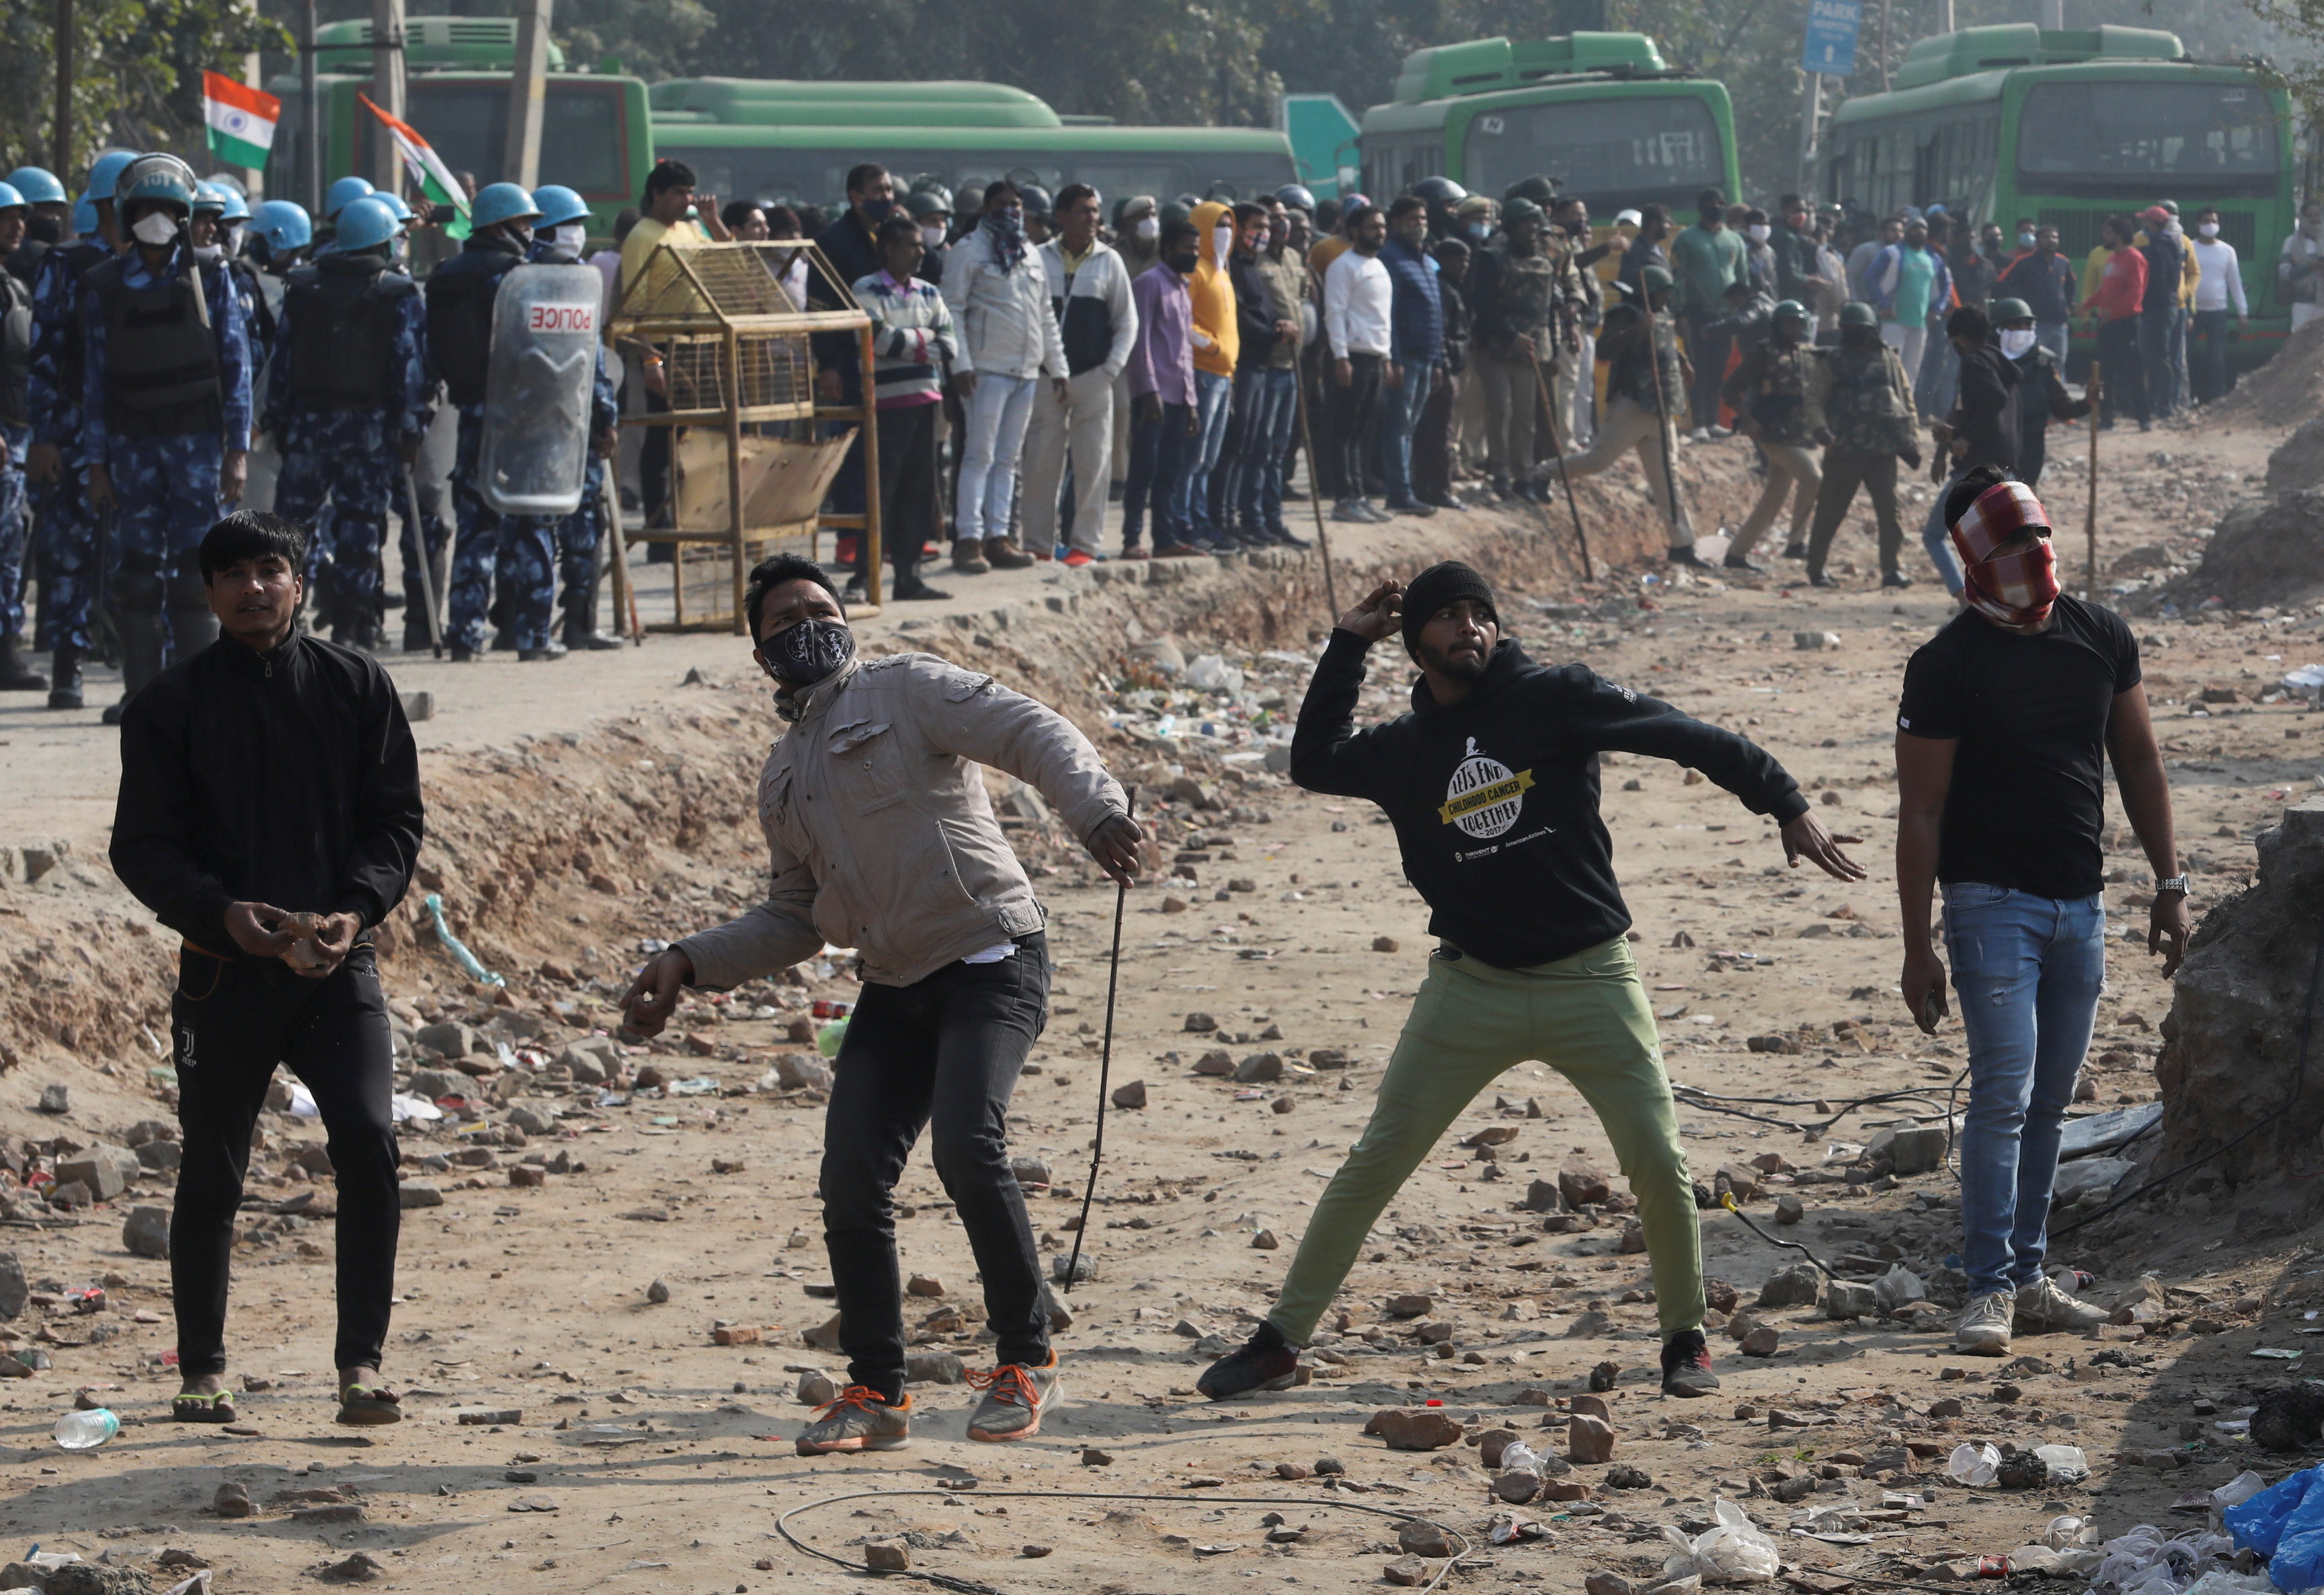 Un grupo de personas lanzan piedras contra los agricultores cerca de Nueva Delhi, el 29 de enero de 2021 (REUTERS/Anushree Fadnavis)